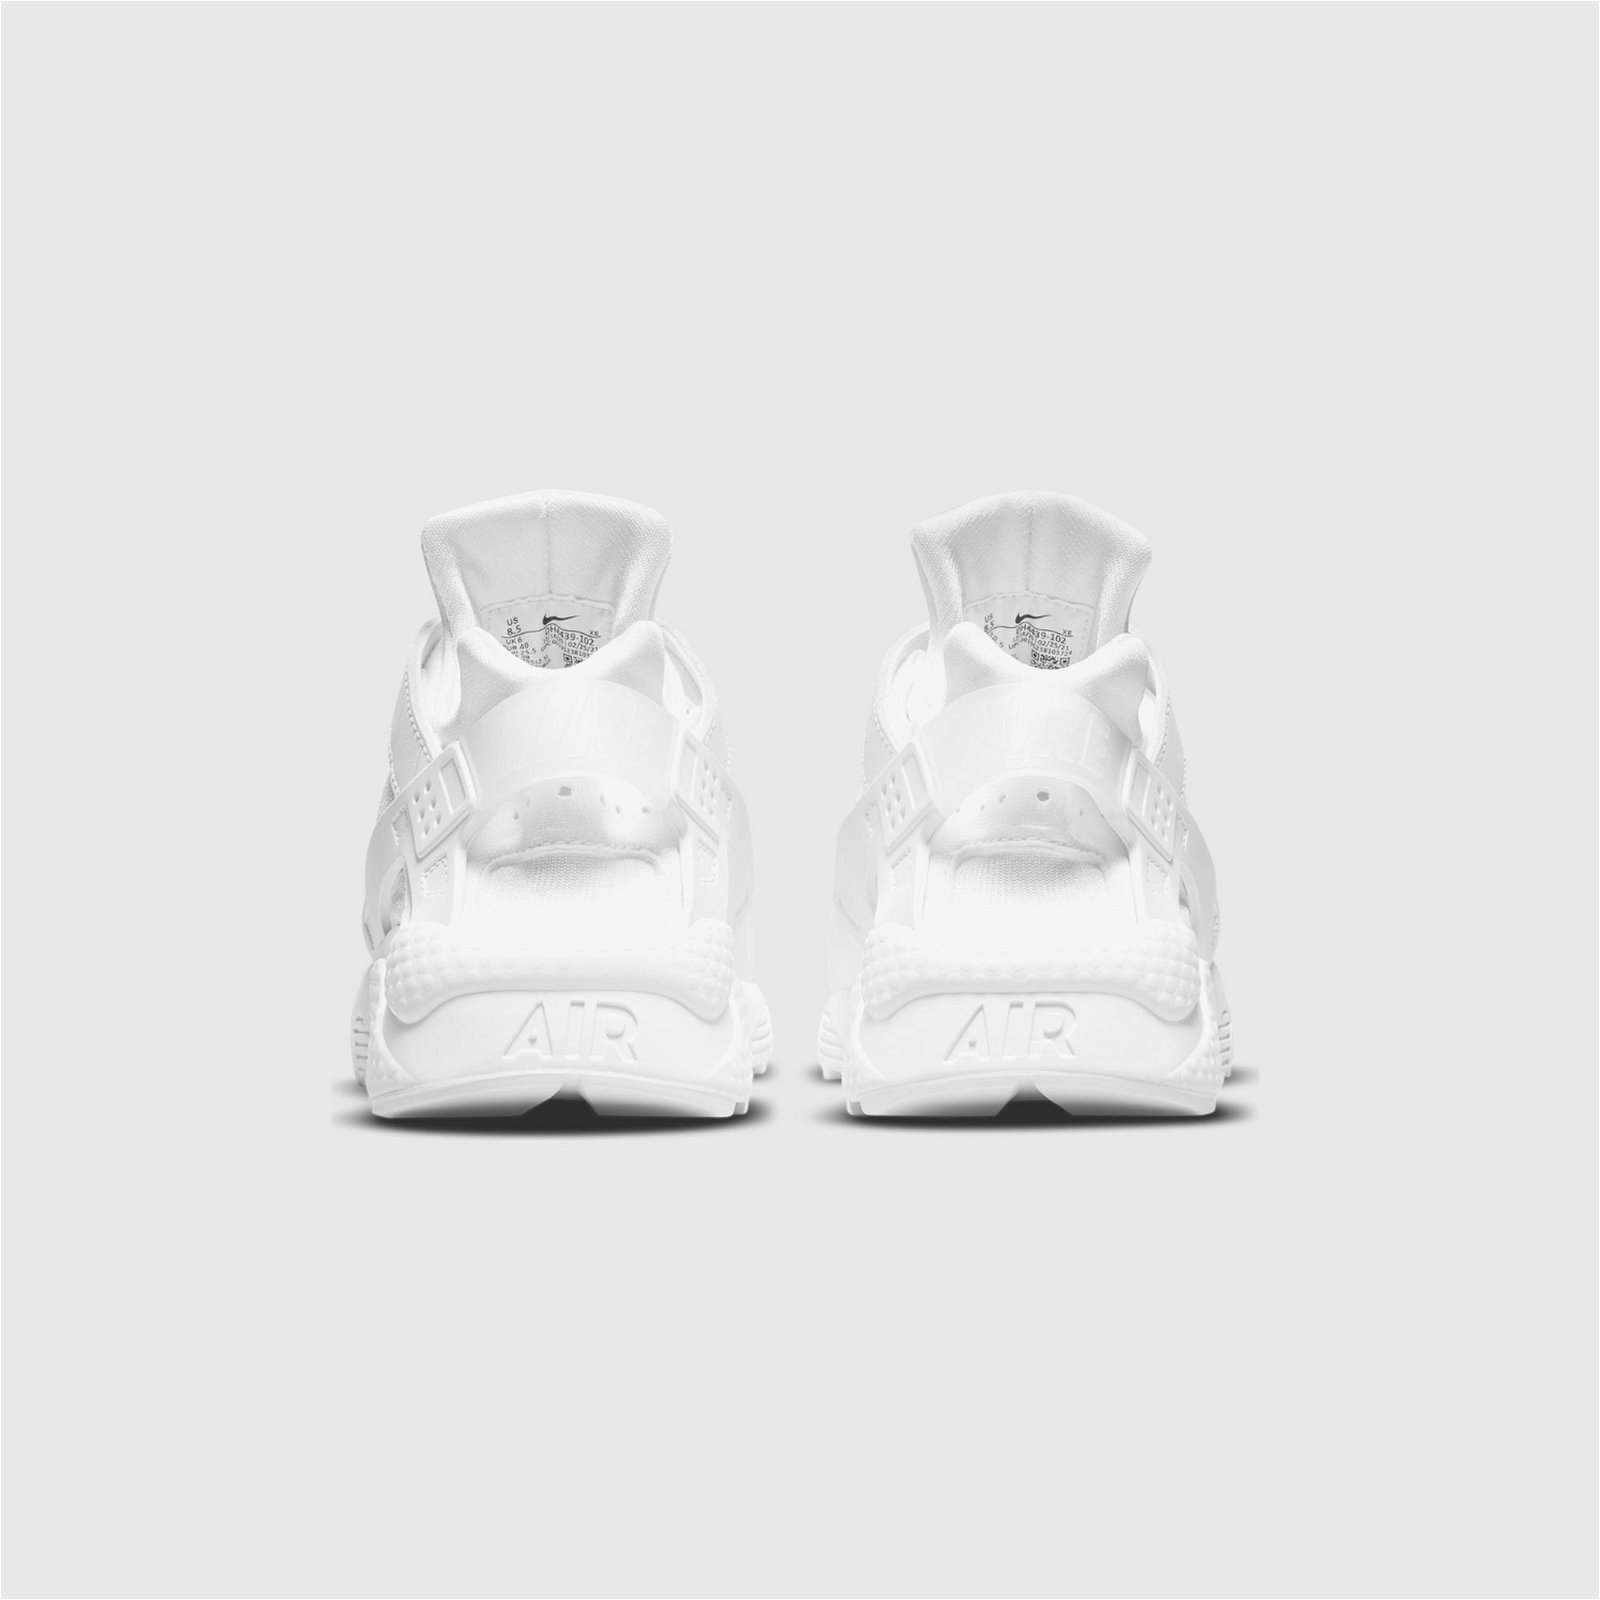 Nike Air Huarache Kadın Beyaz Spor Ayakkabı